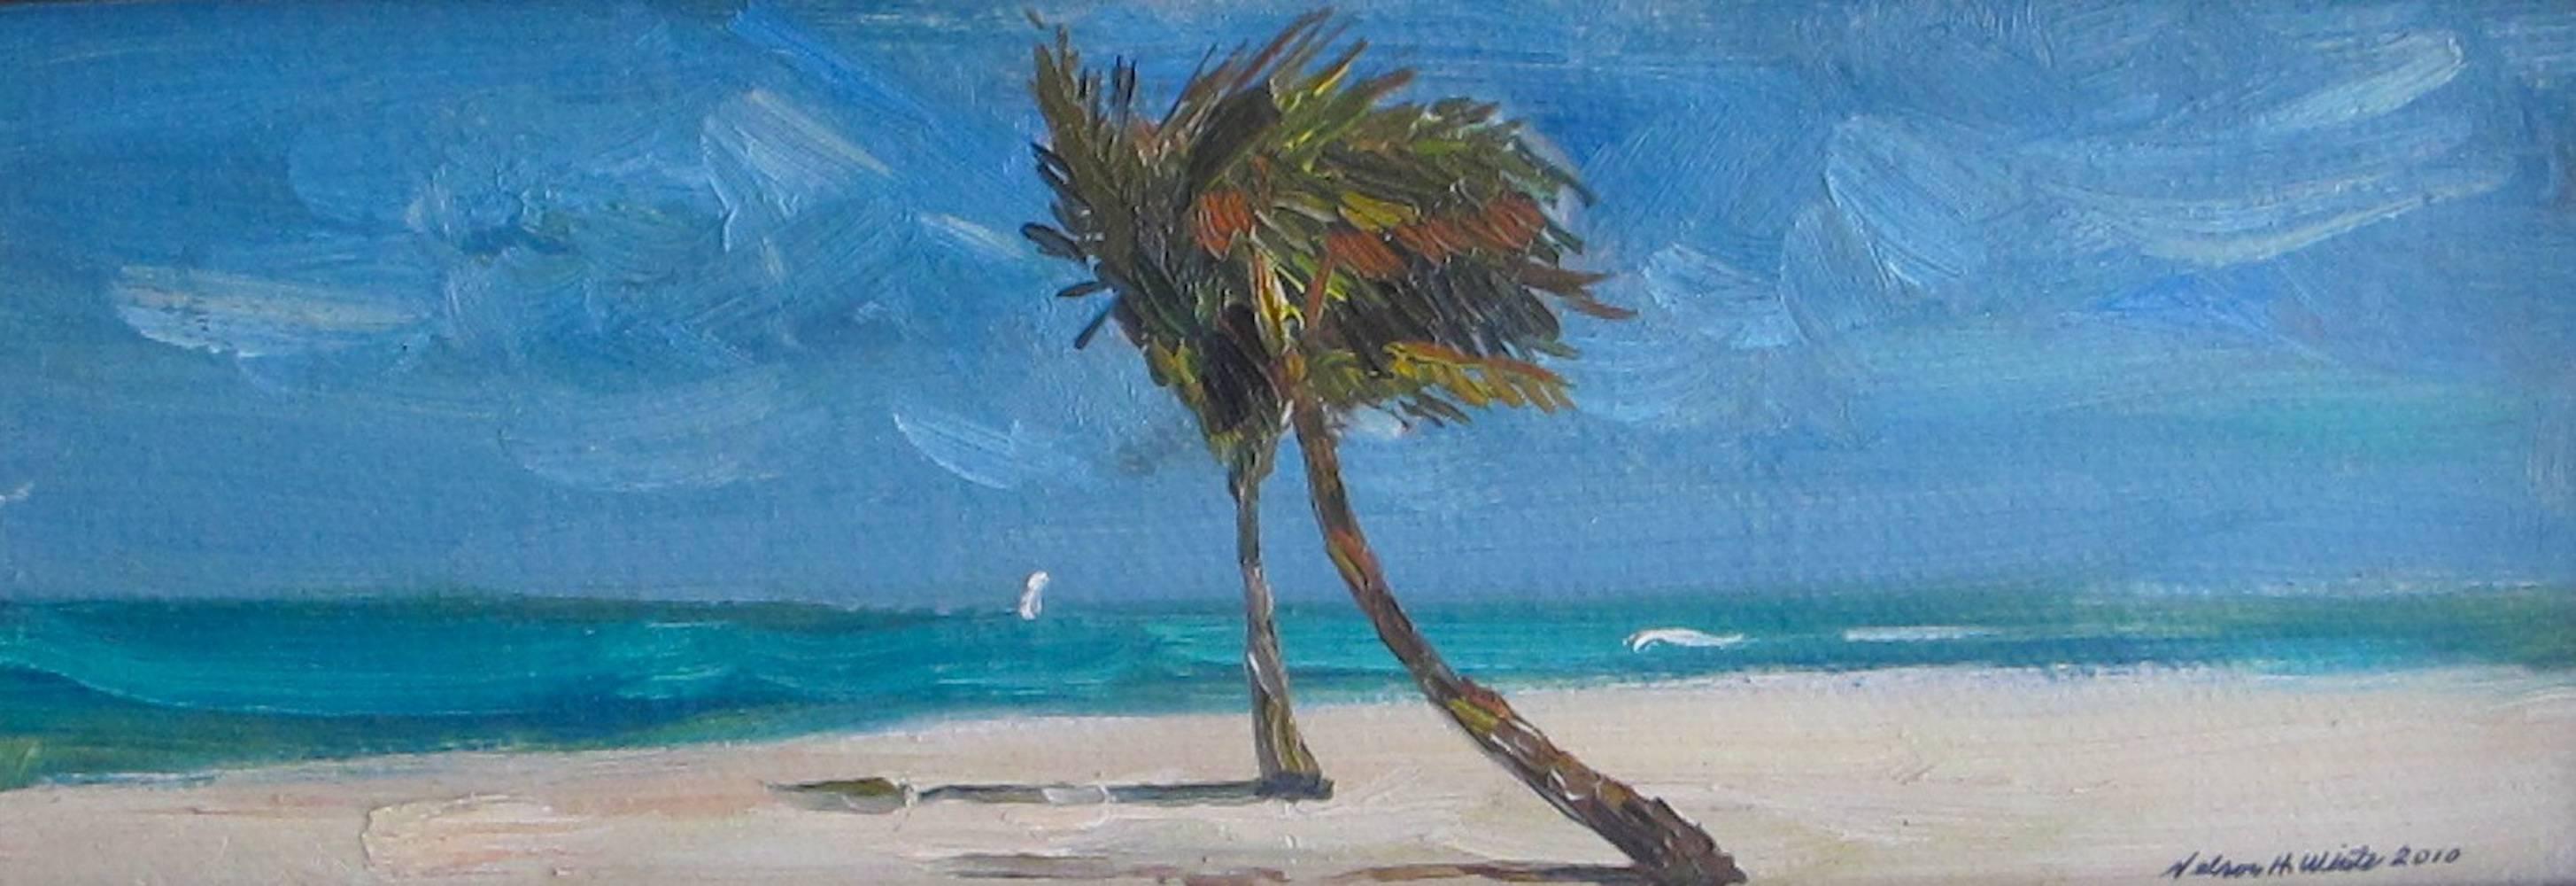 "The Royal Palms" - peinture impressionniste américaine contemporaine, petite échelle